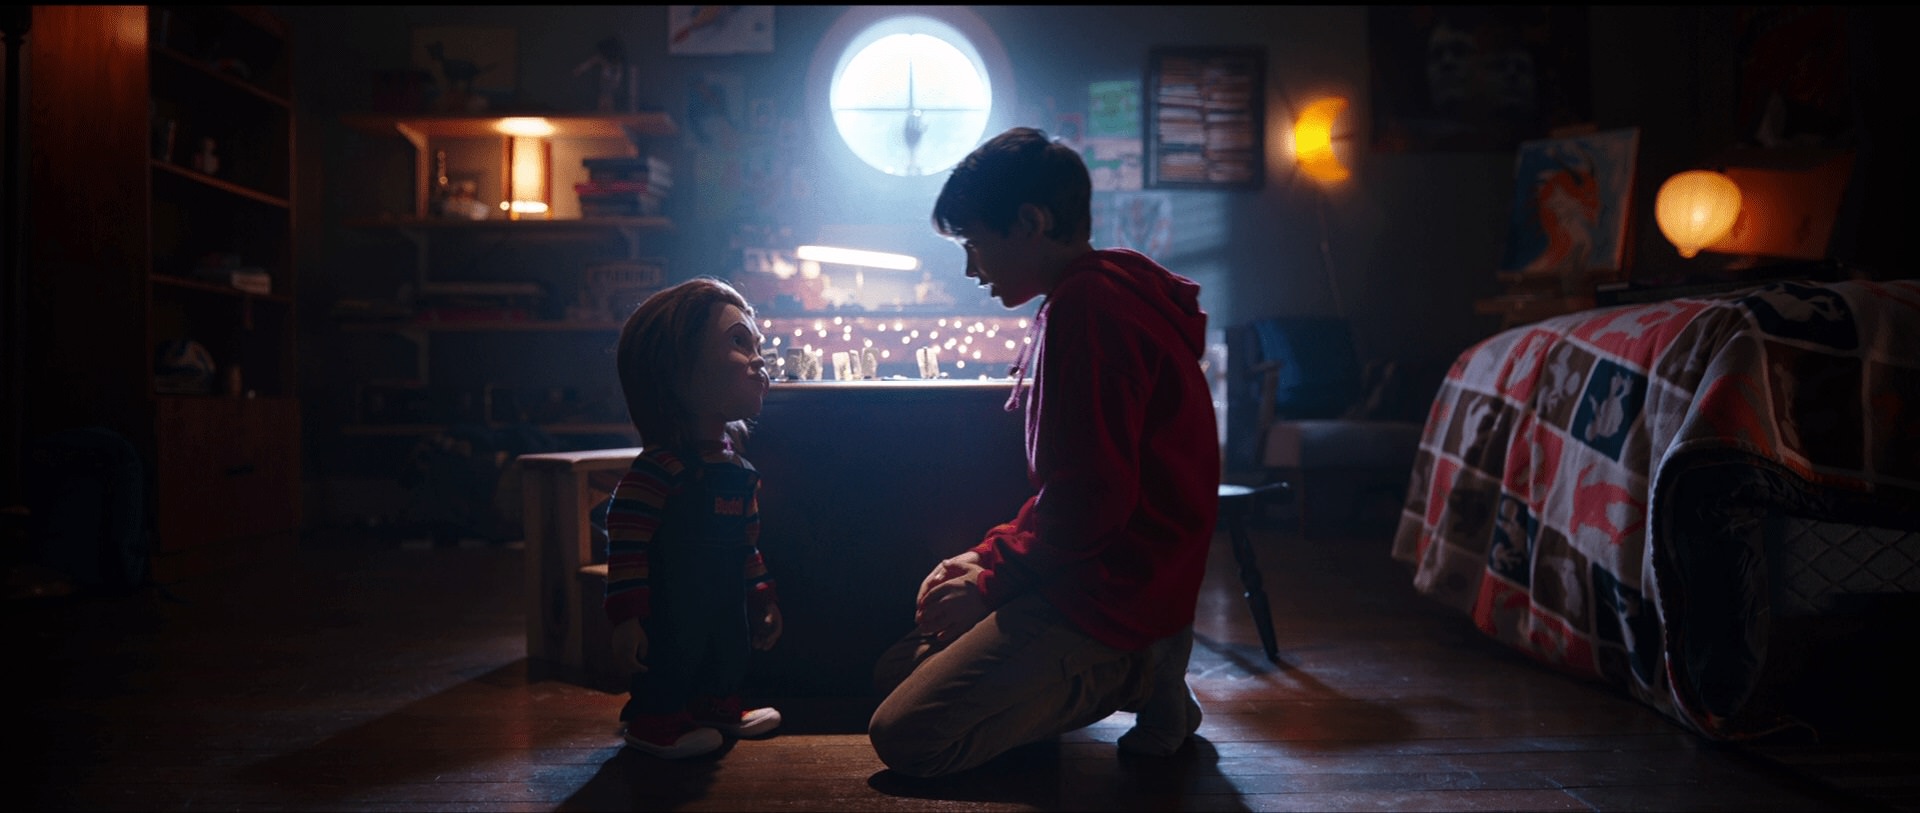 تعامل پسر بچه و عروسک در اتاق در فیلم بازی بچگانه (فیلم 2019)